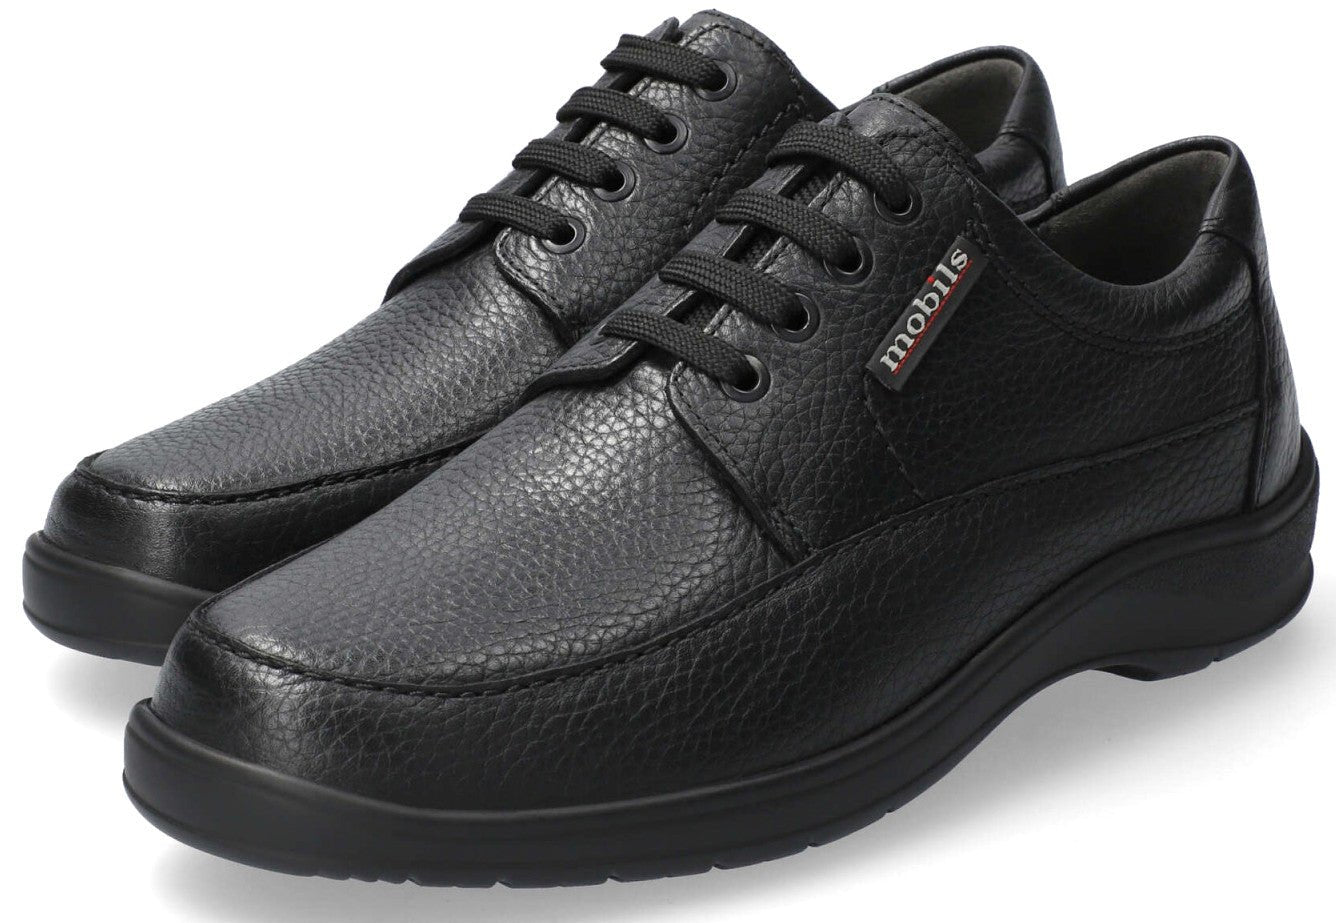 'Ezard' men's ergonomic shoes - Black - Chaplinshoes'Ezard' men's ergonomic shoes - BlackMephisto